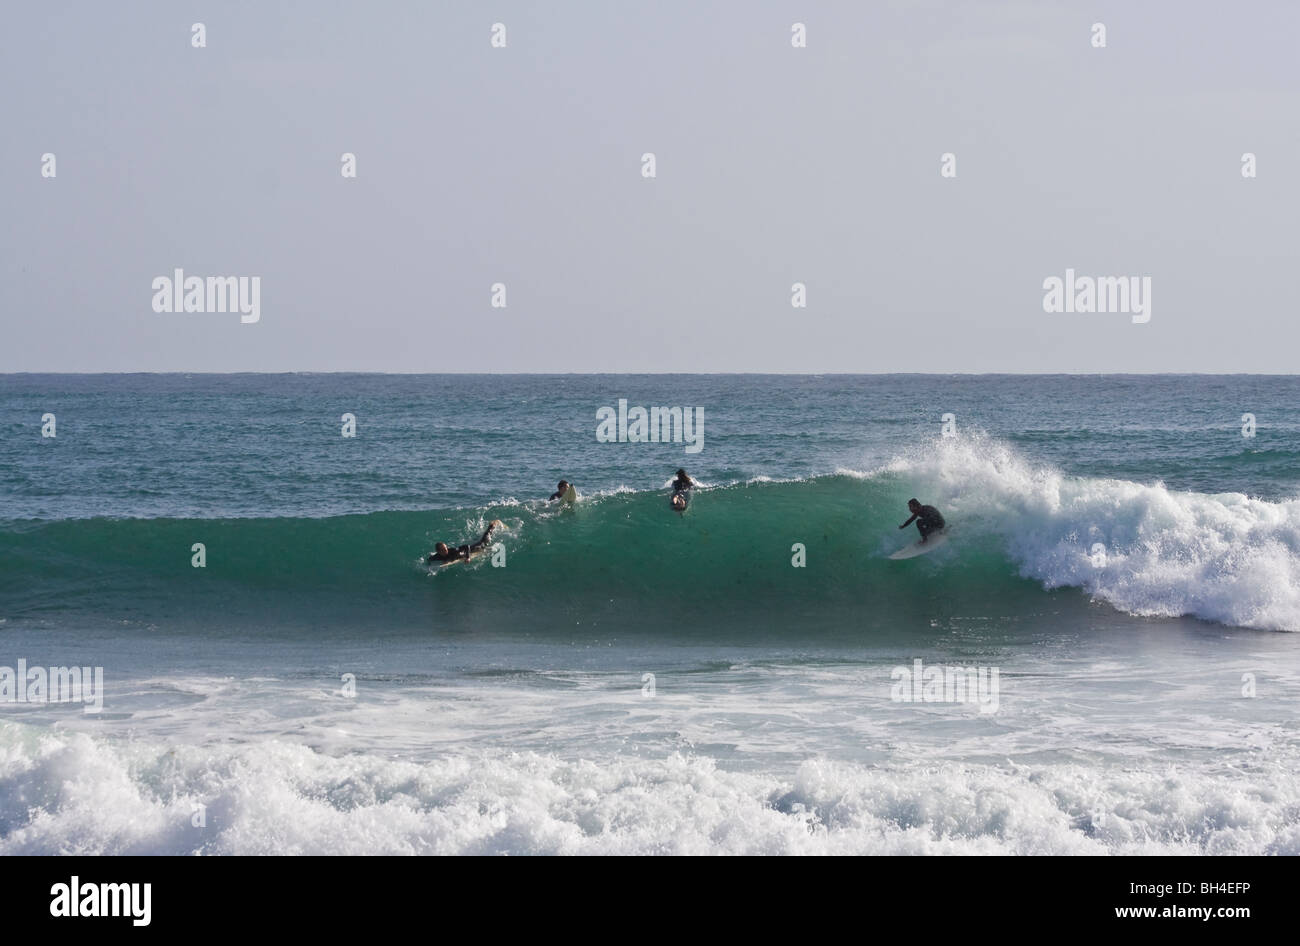 Surfer sur la Sardaigne. Mini Capo Capo Mannu. L'Italie, Sardaigne, île, mer Méditerranée Banque D'Images